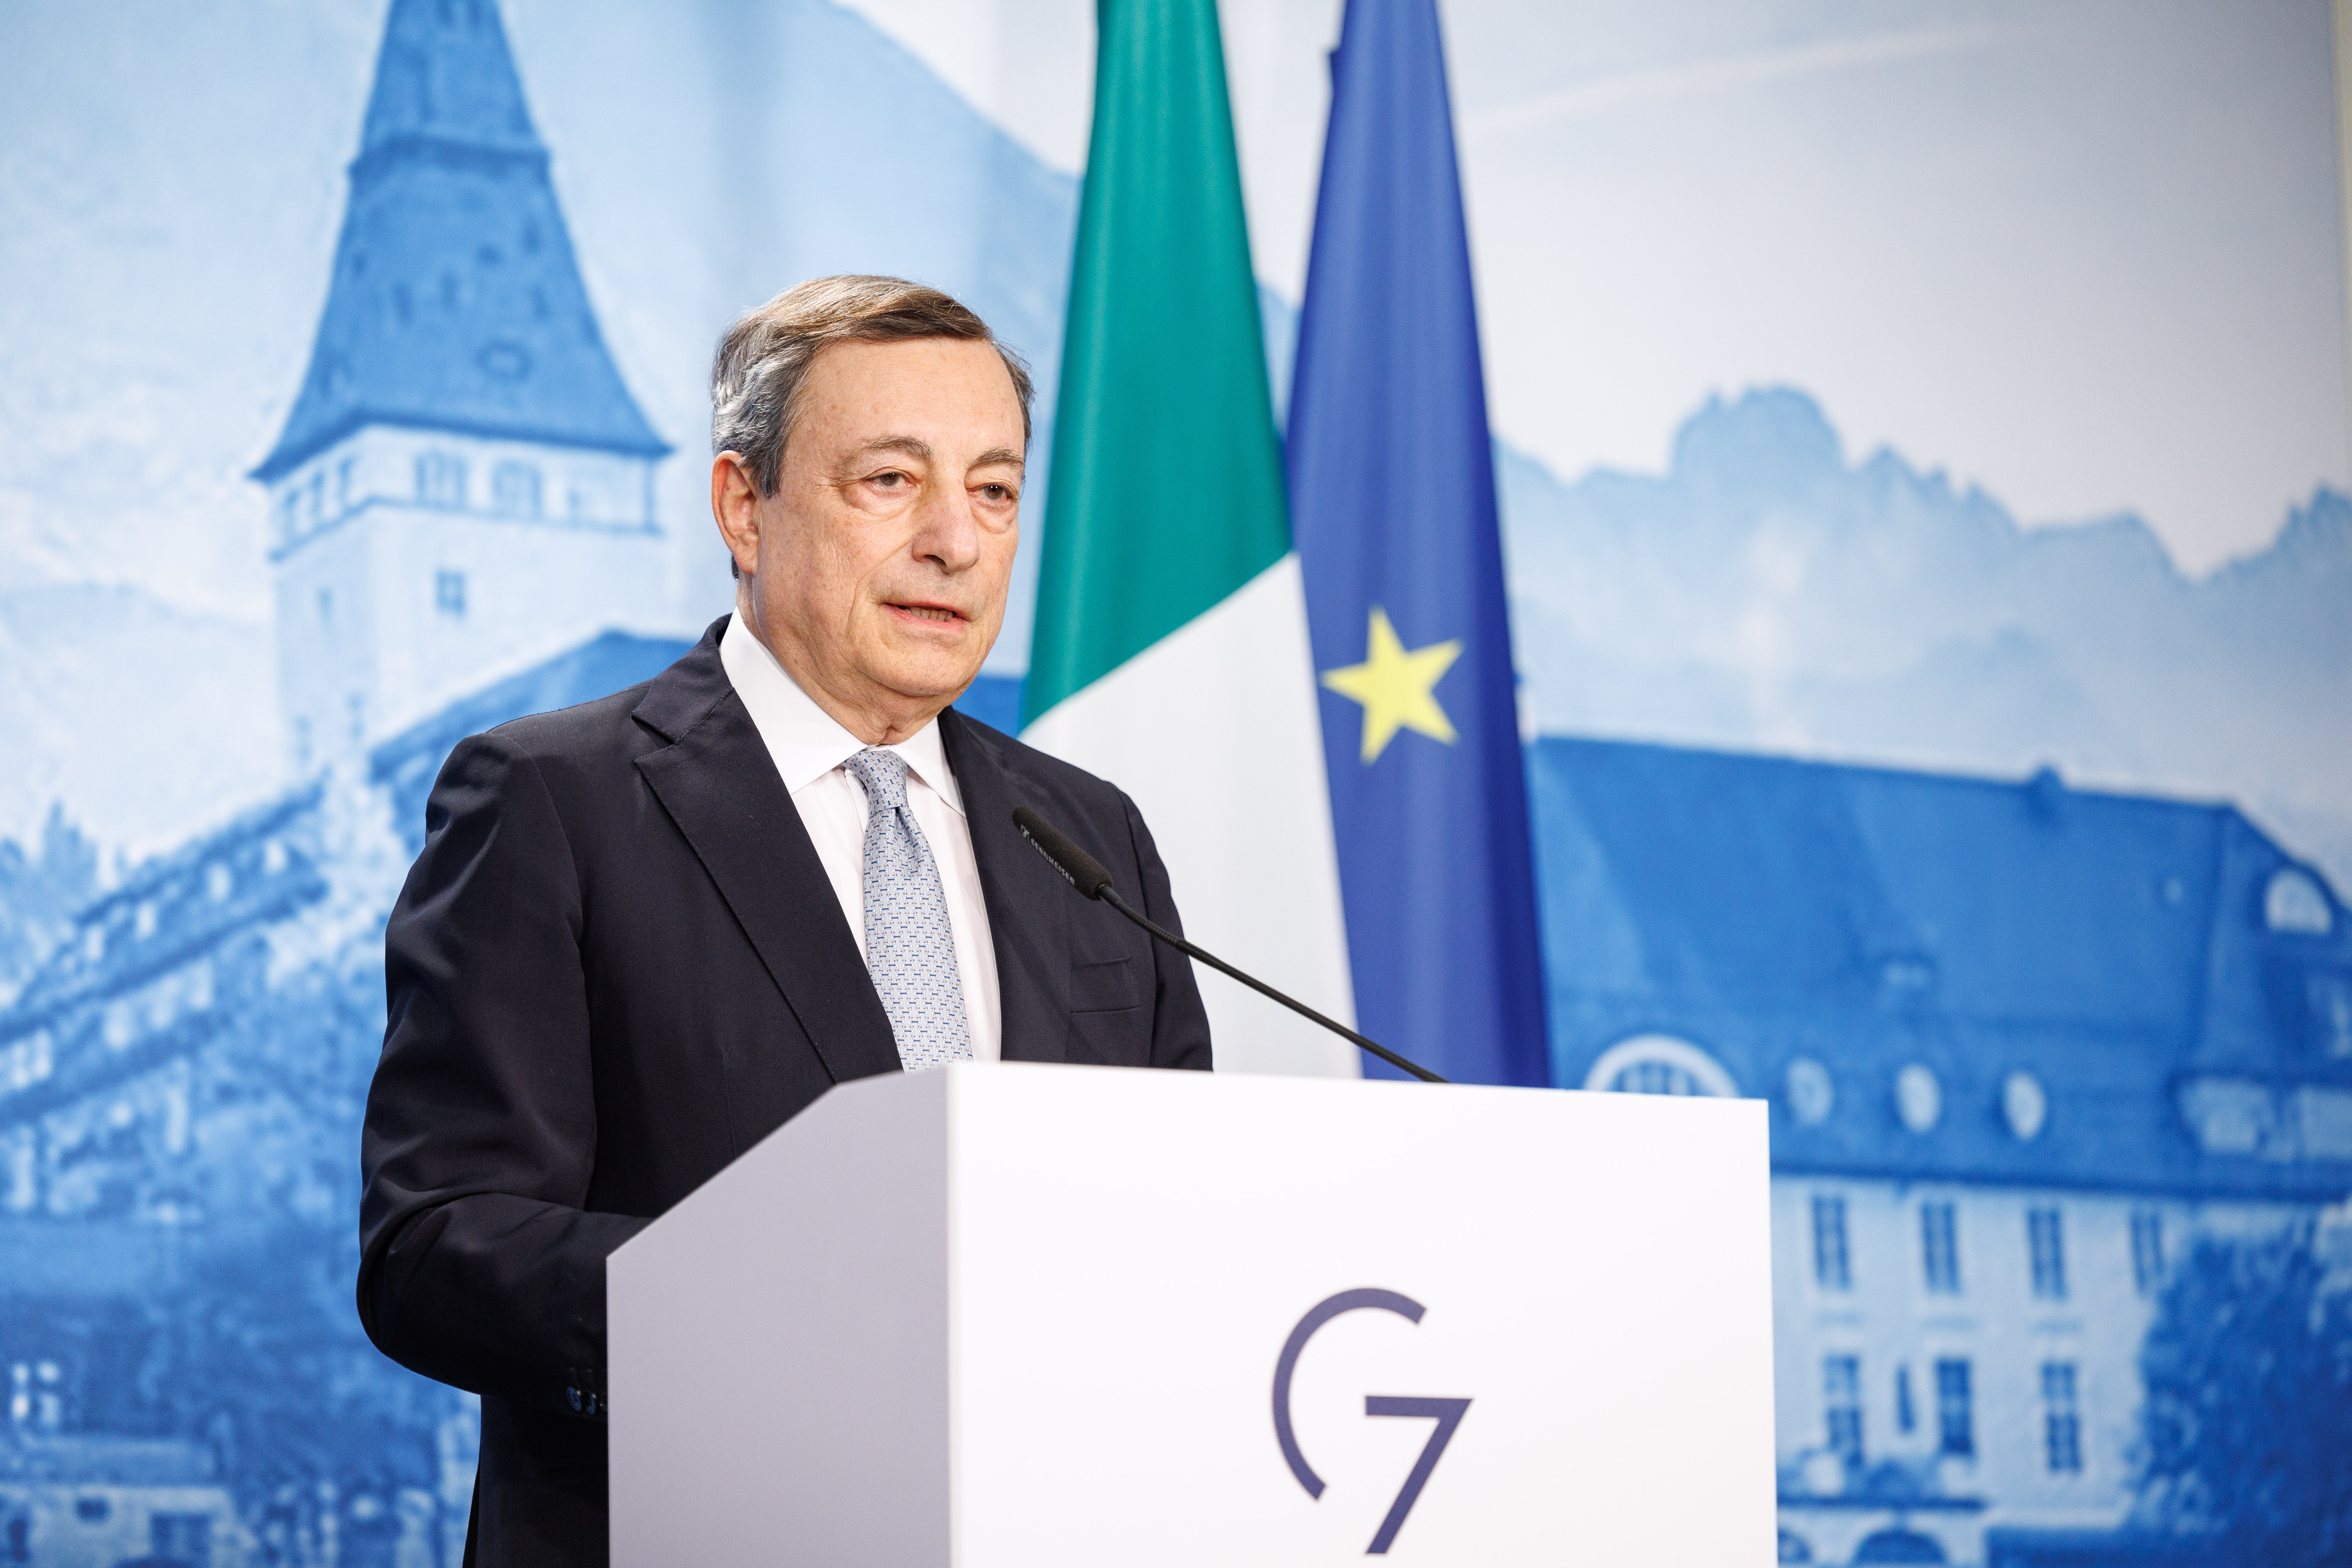 Mario Draghi (Ministerpräsident Italien) gibt eine Pressekonferenz zum Abschluss des G7-Gipfels.